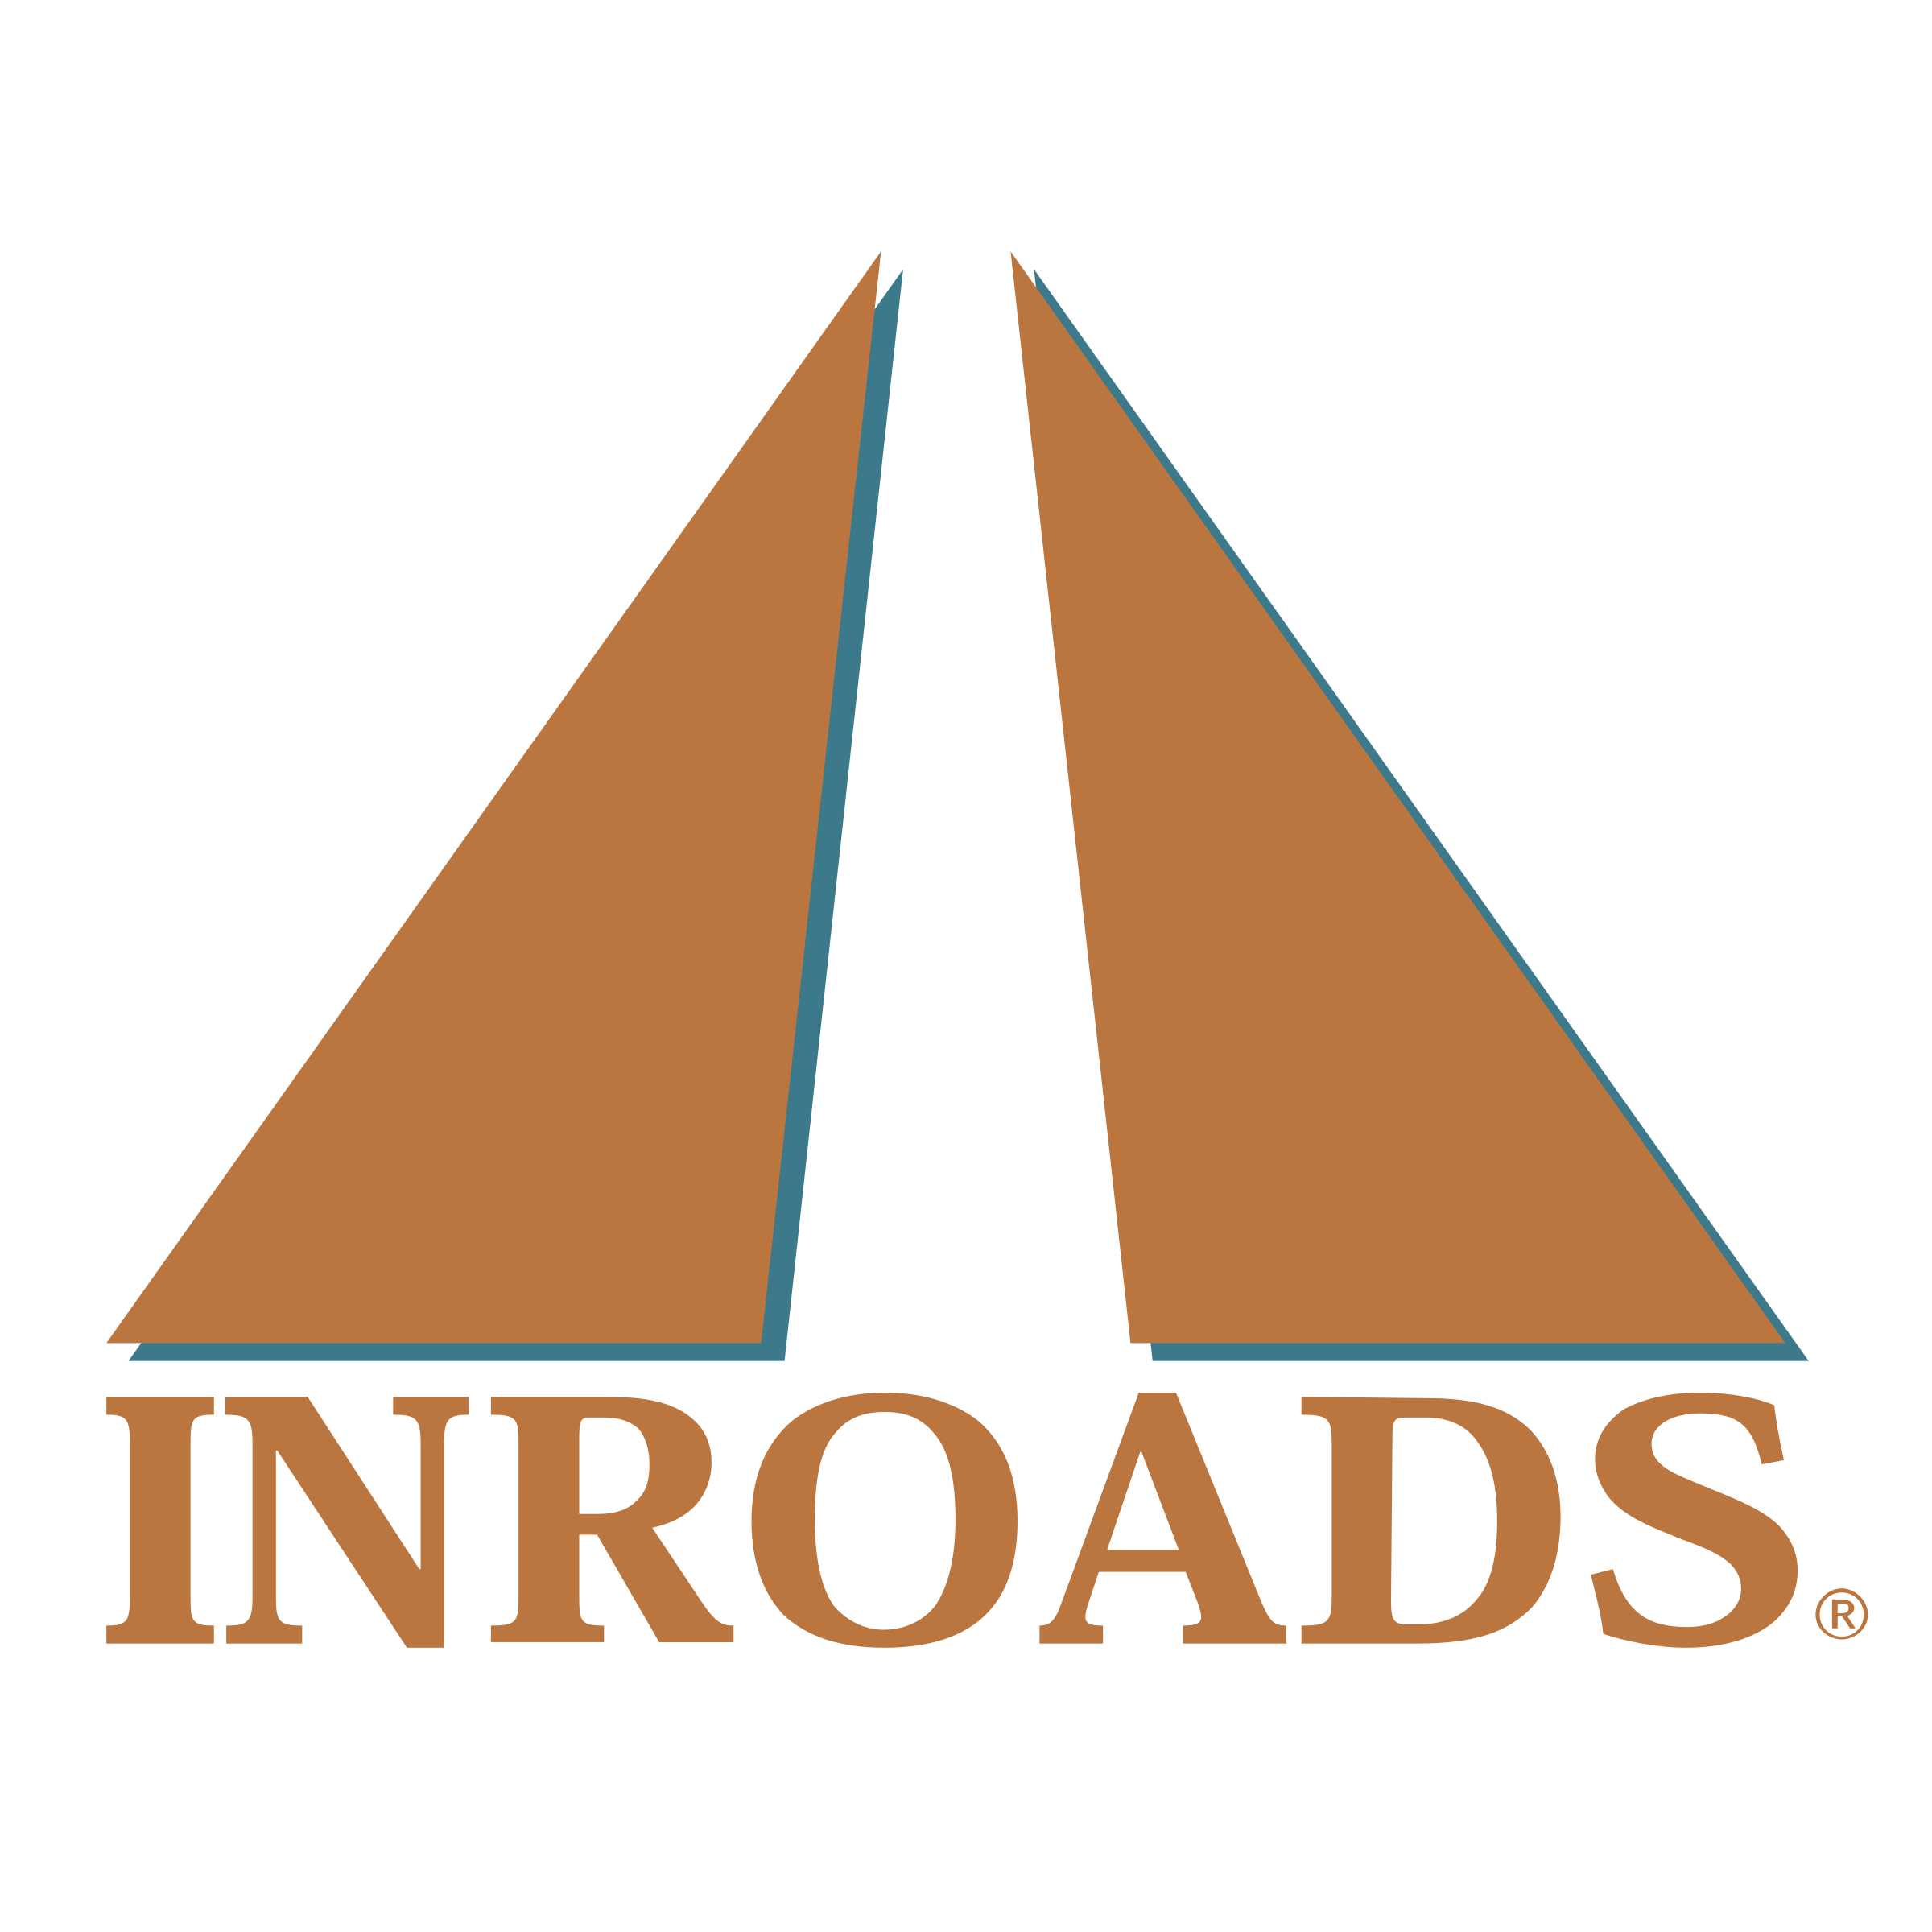 Inroads Logo - Inroads Logo PNG Transparent & SVG Vector - Freebie Supply